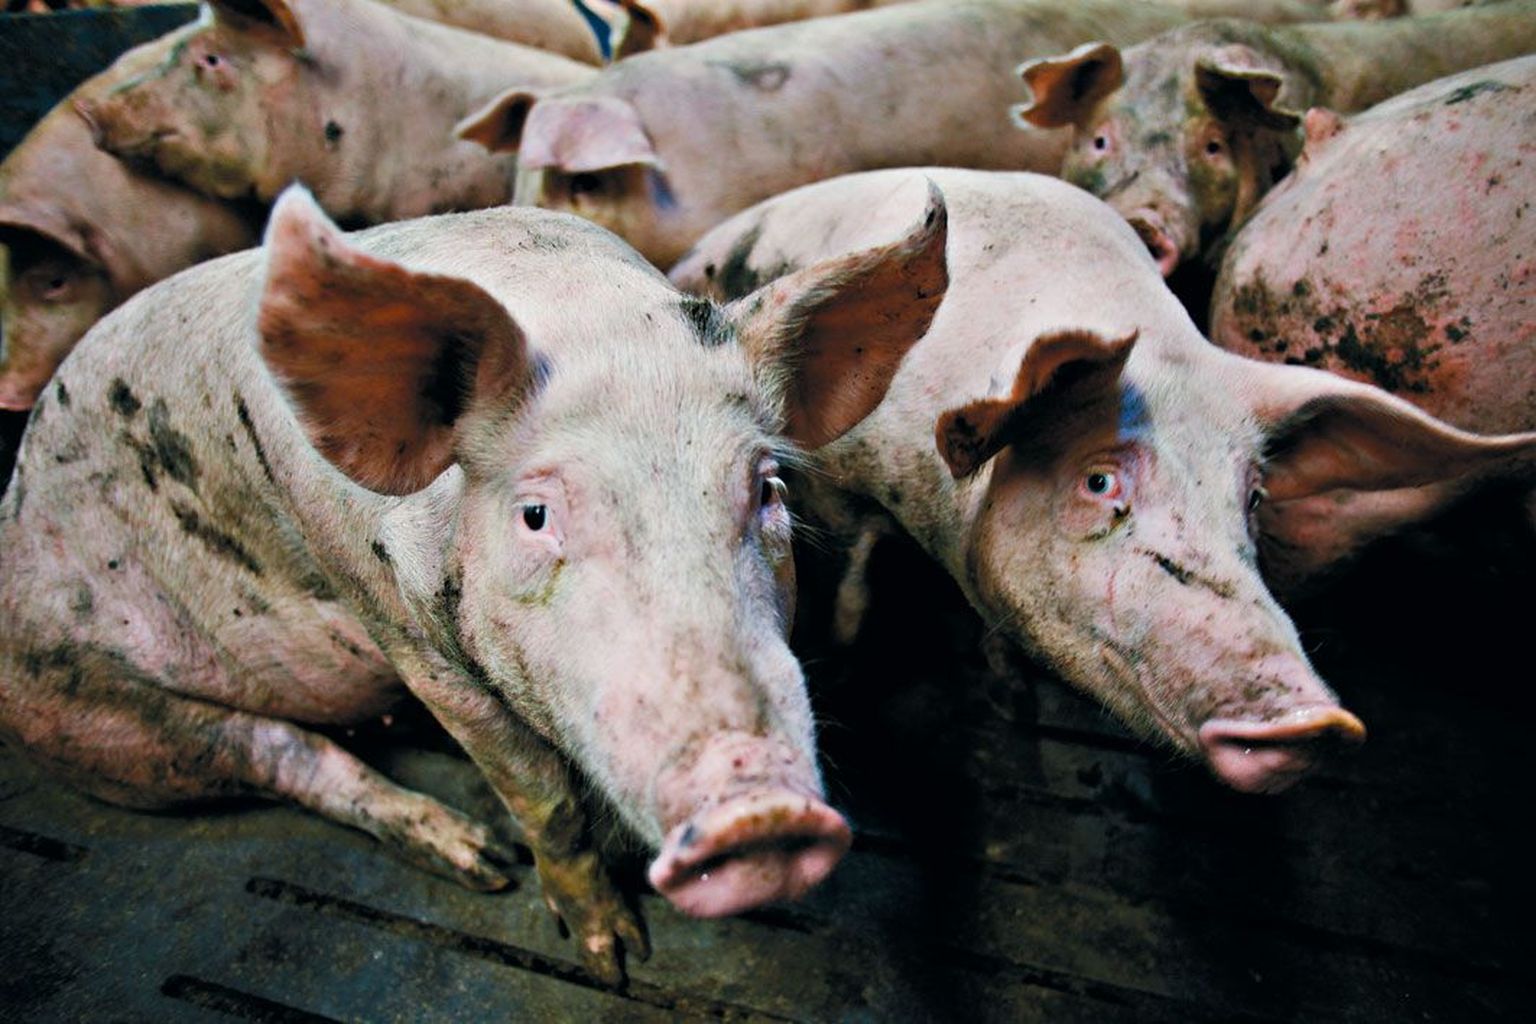 Enam kui pooled Eestimaa sigadest müüakse praegu Venemaale, kus nende eest makstakse neljandiku võrra kõrgemat hinda.